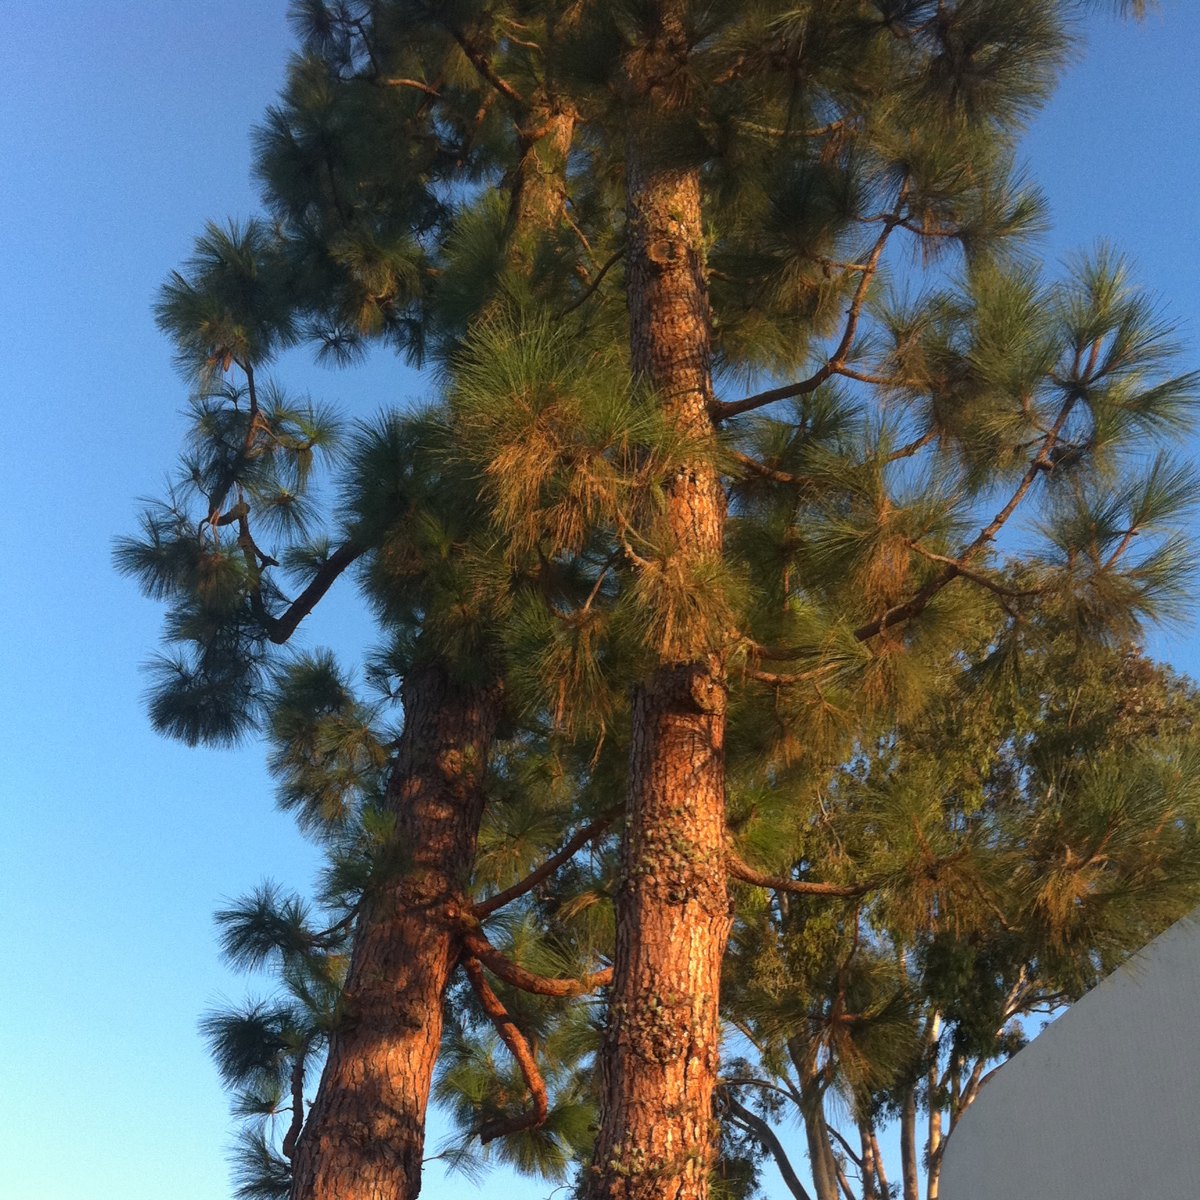 Canary island pine